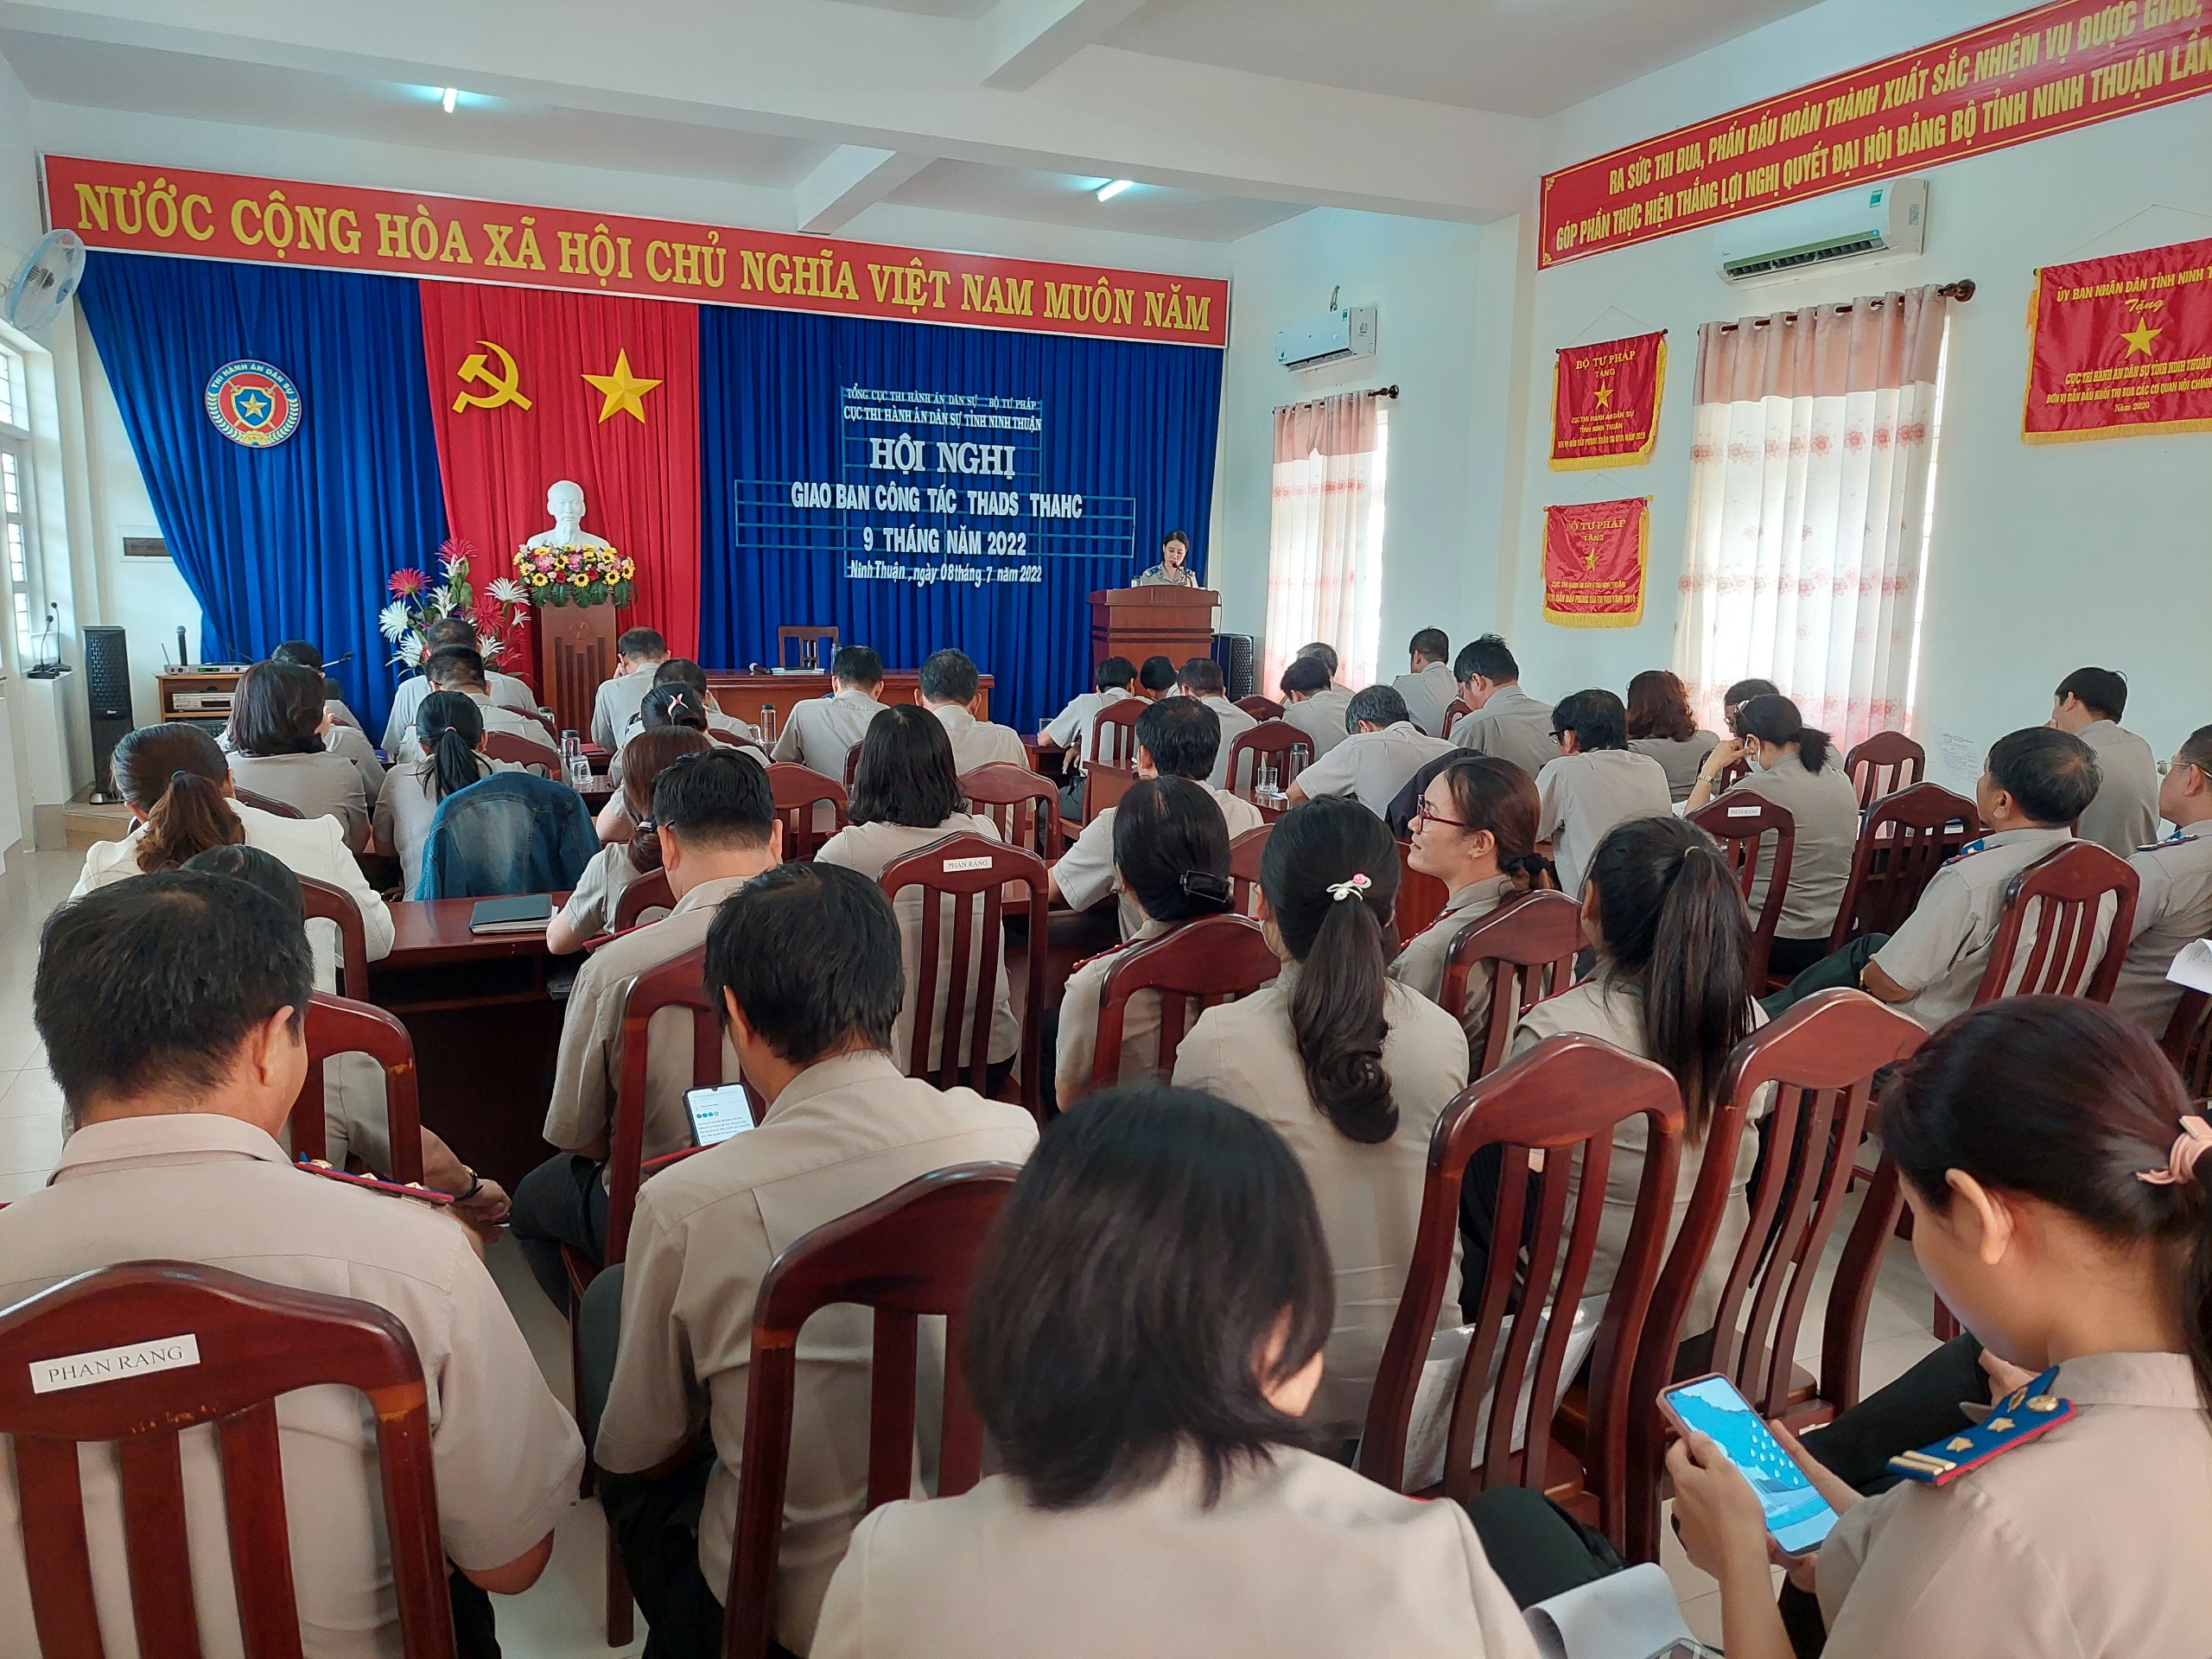 Cục Thi hành án dân sự tỉnh Ninh Thuận tổ chức Hội nghị giao ban công tác thi hành án dân sự 09 tháng năm 2022 và triển khai phương hướng, nhiệm vụ trọng tâm 03 tháng còn lại của năm 2022.